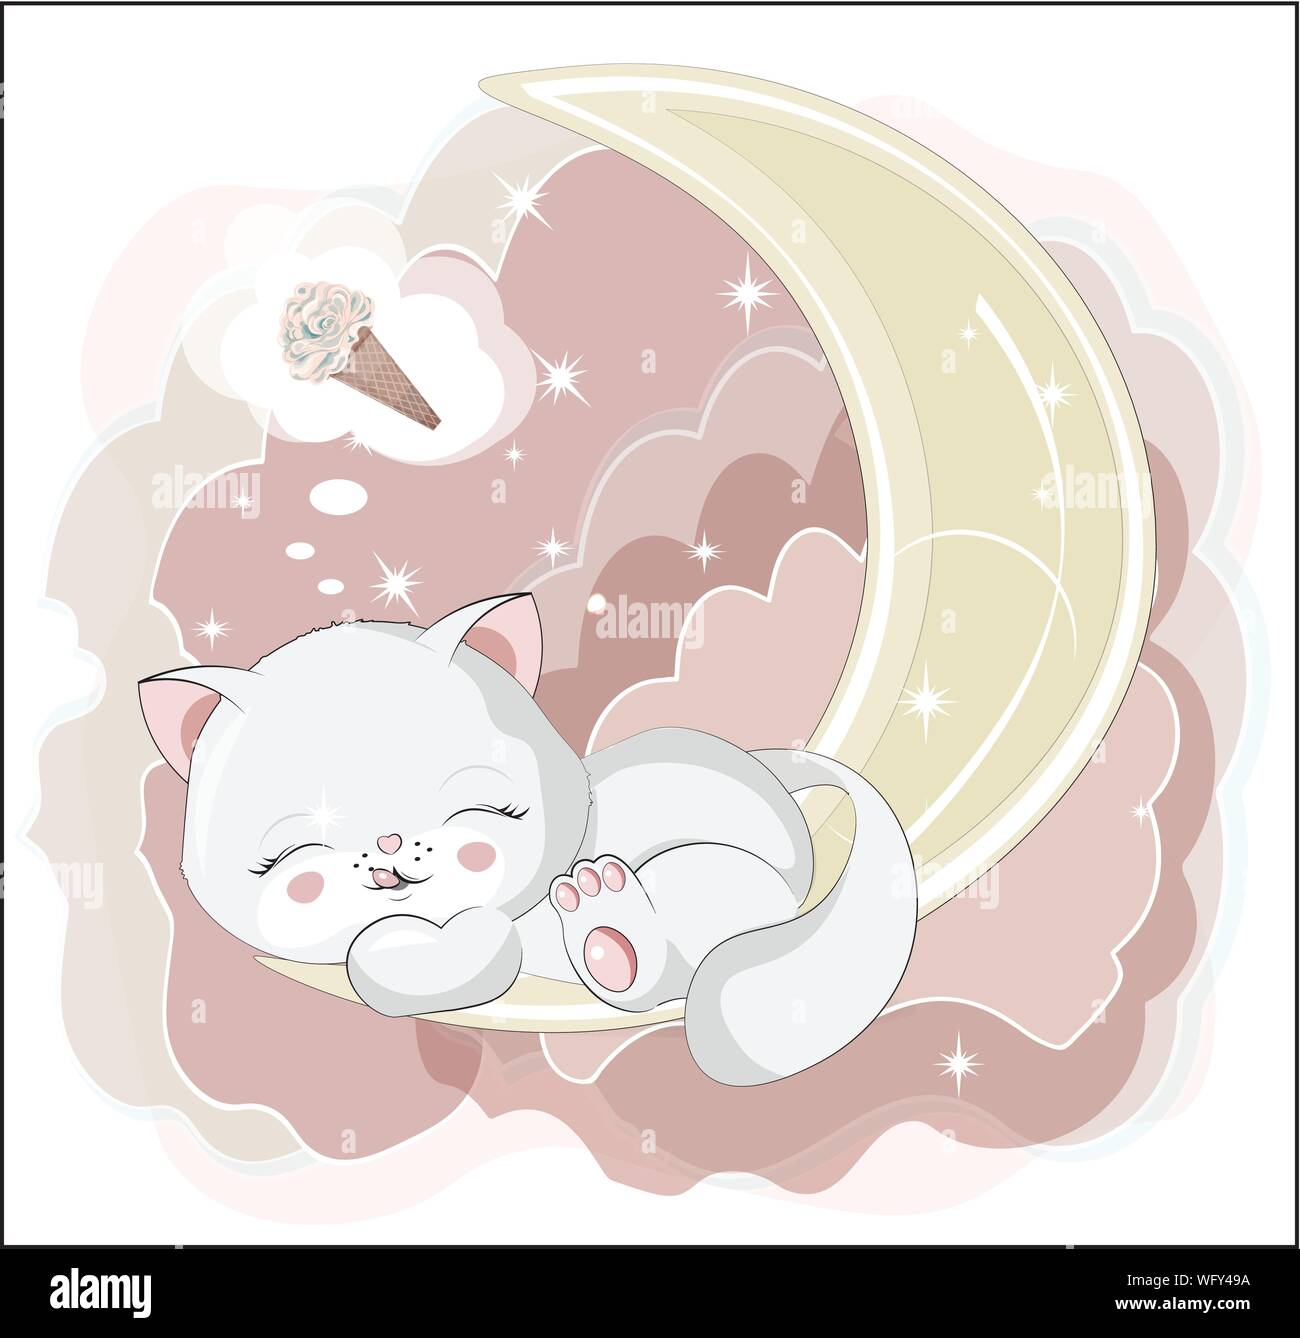 Le miel blanc joli chat, chaton, le sommeil et le sourire de chat, avec de la glace. Peut être utilisé pour t-shirt print, Kids wear fashion design, bébé douche invitat Illustration de Vecteur